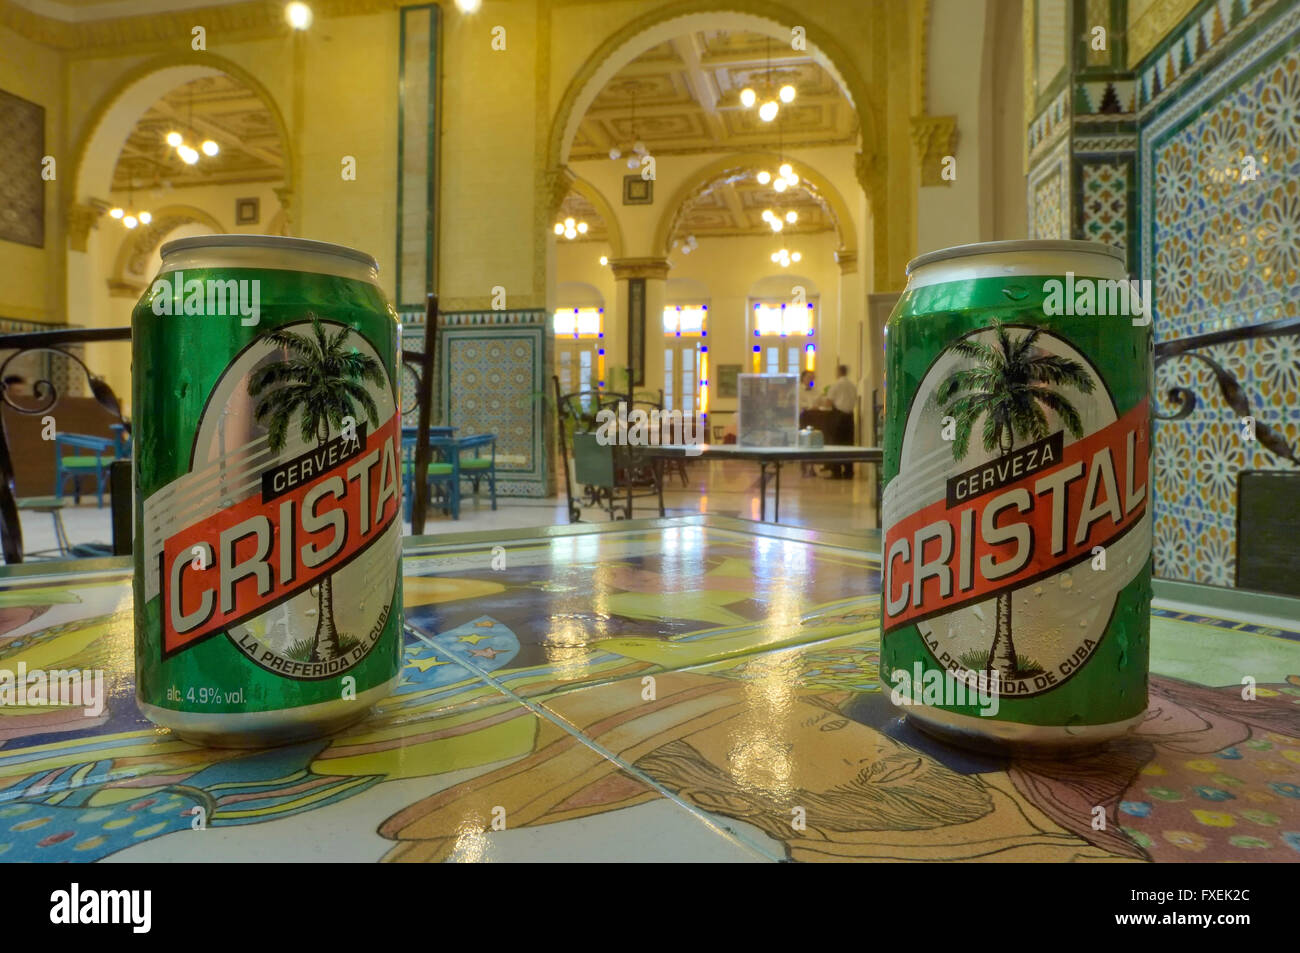 Avente una possibile della birra locale, Cristal presso l'Hotel Inglaterra, Havana, Cuba Foto Stock